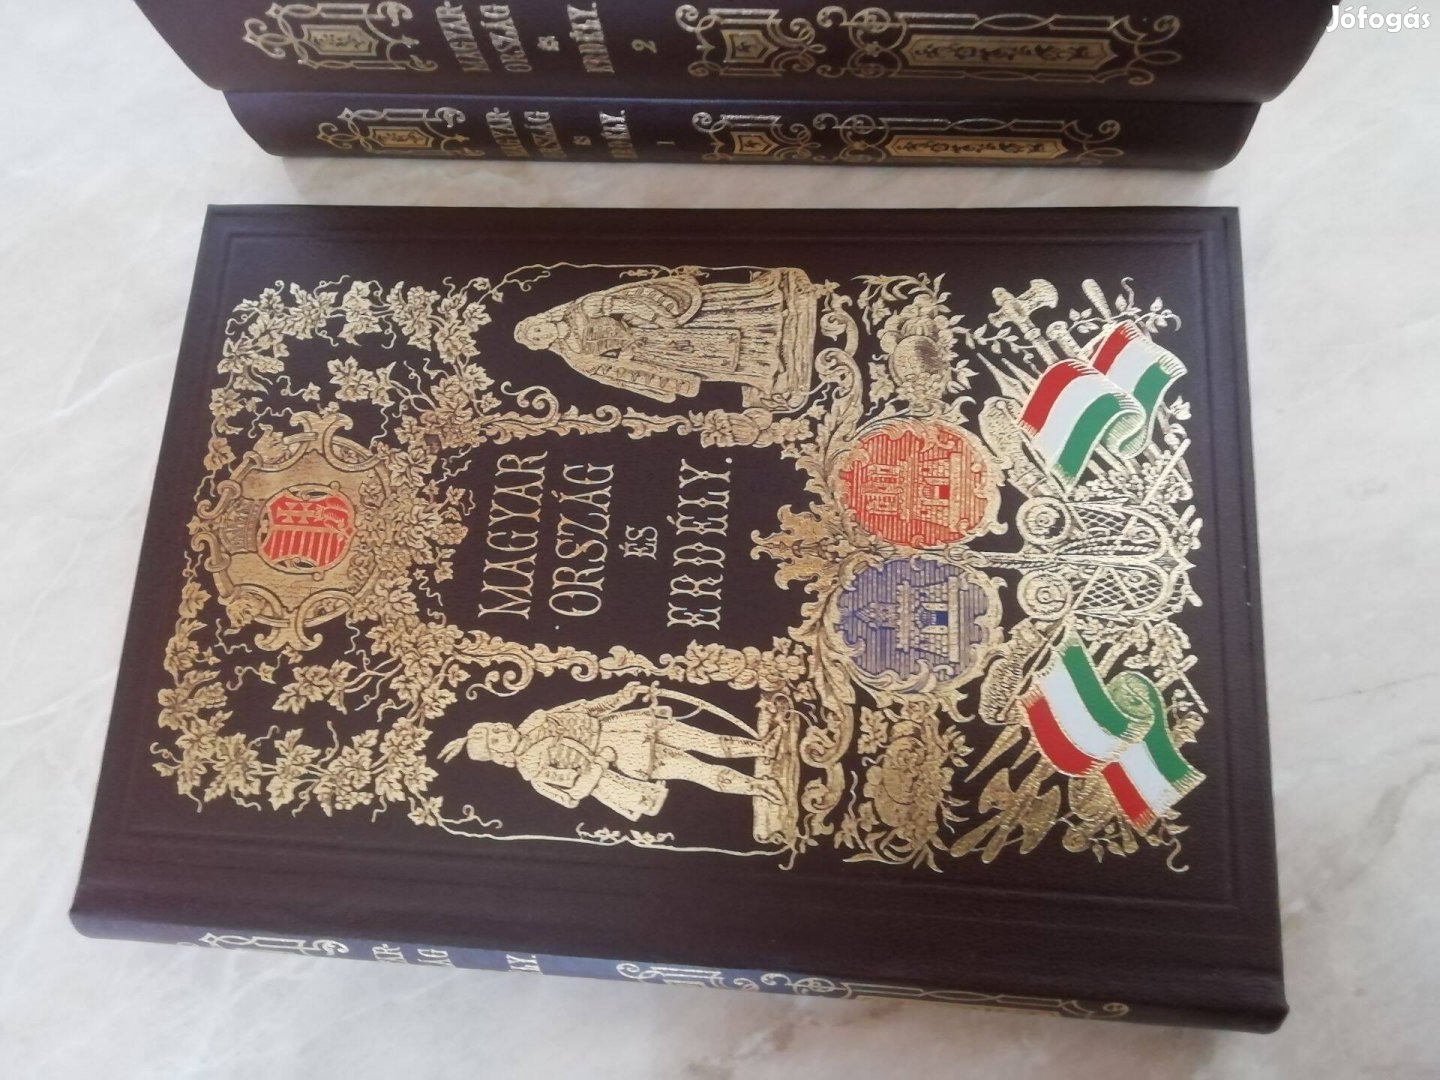 Magyarország és Erdély Története 1854-es kiadásának reprint ki